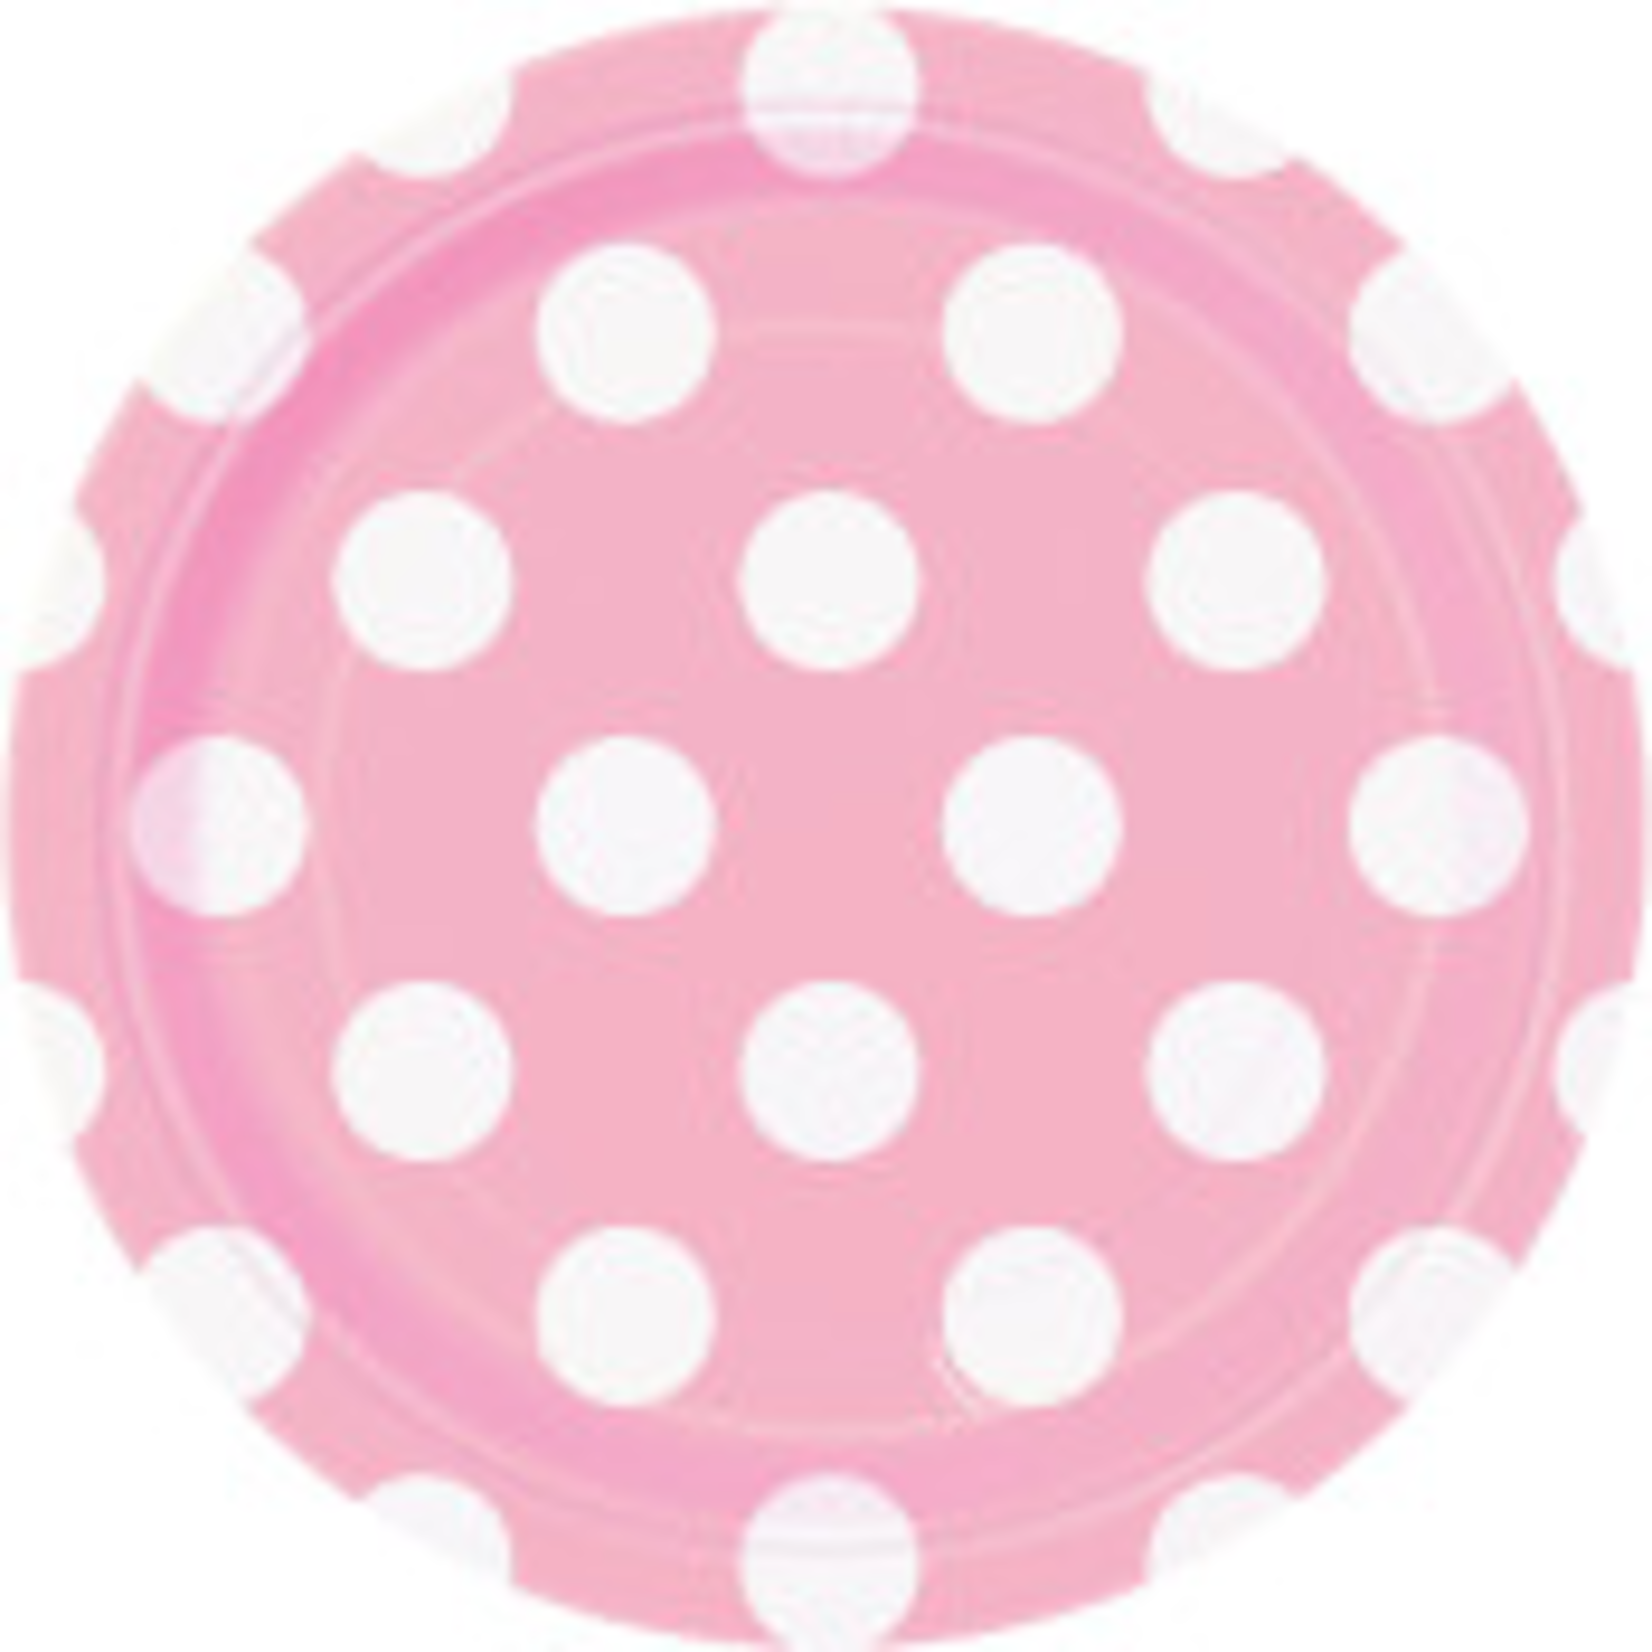 pink dot 7 """" plate reg $1.89